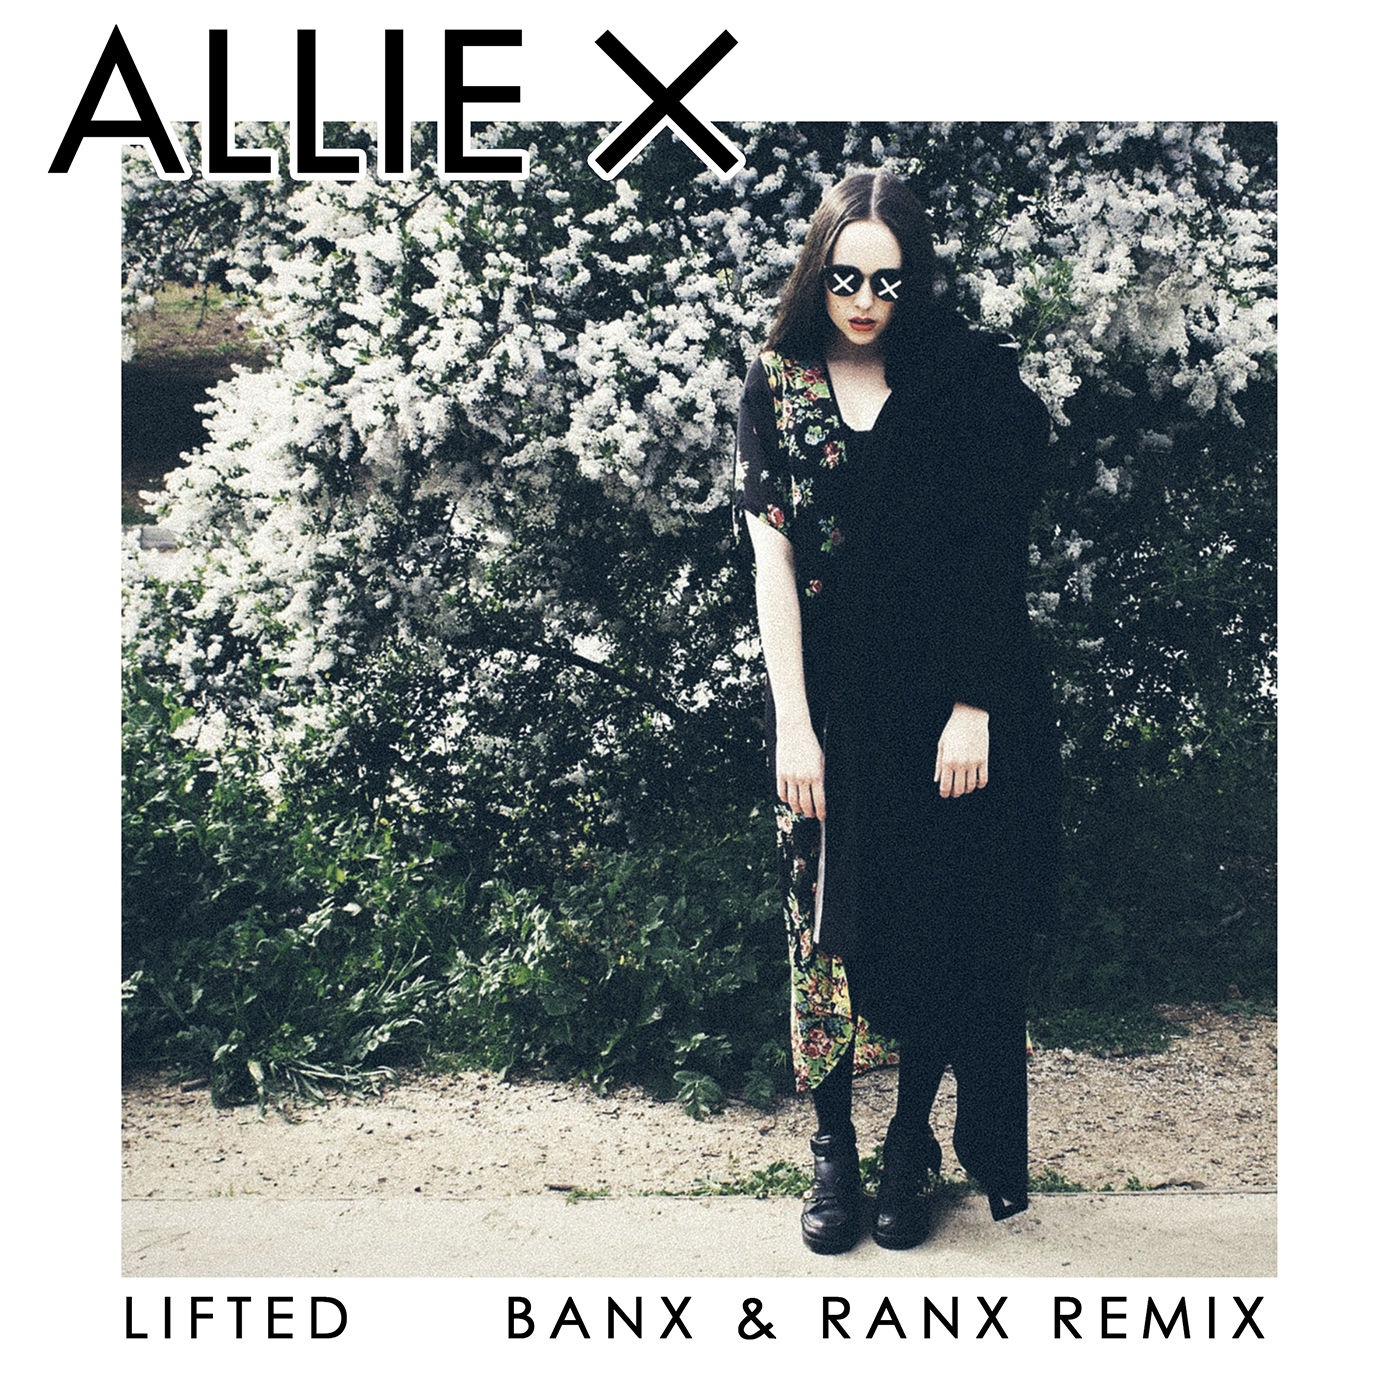 Lifted (Banx & Ranx Remix)